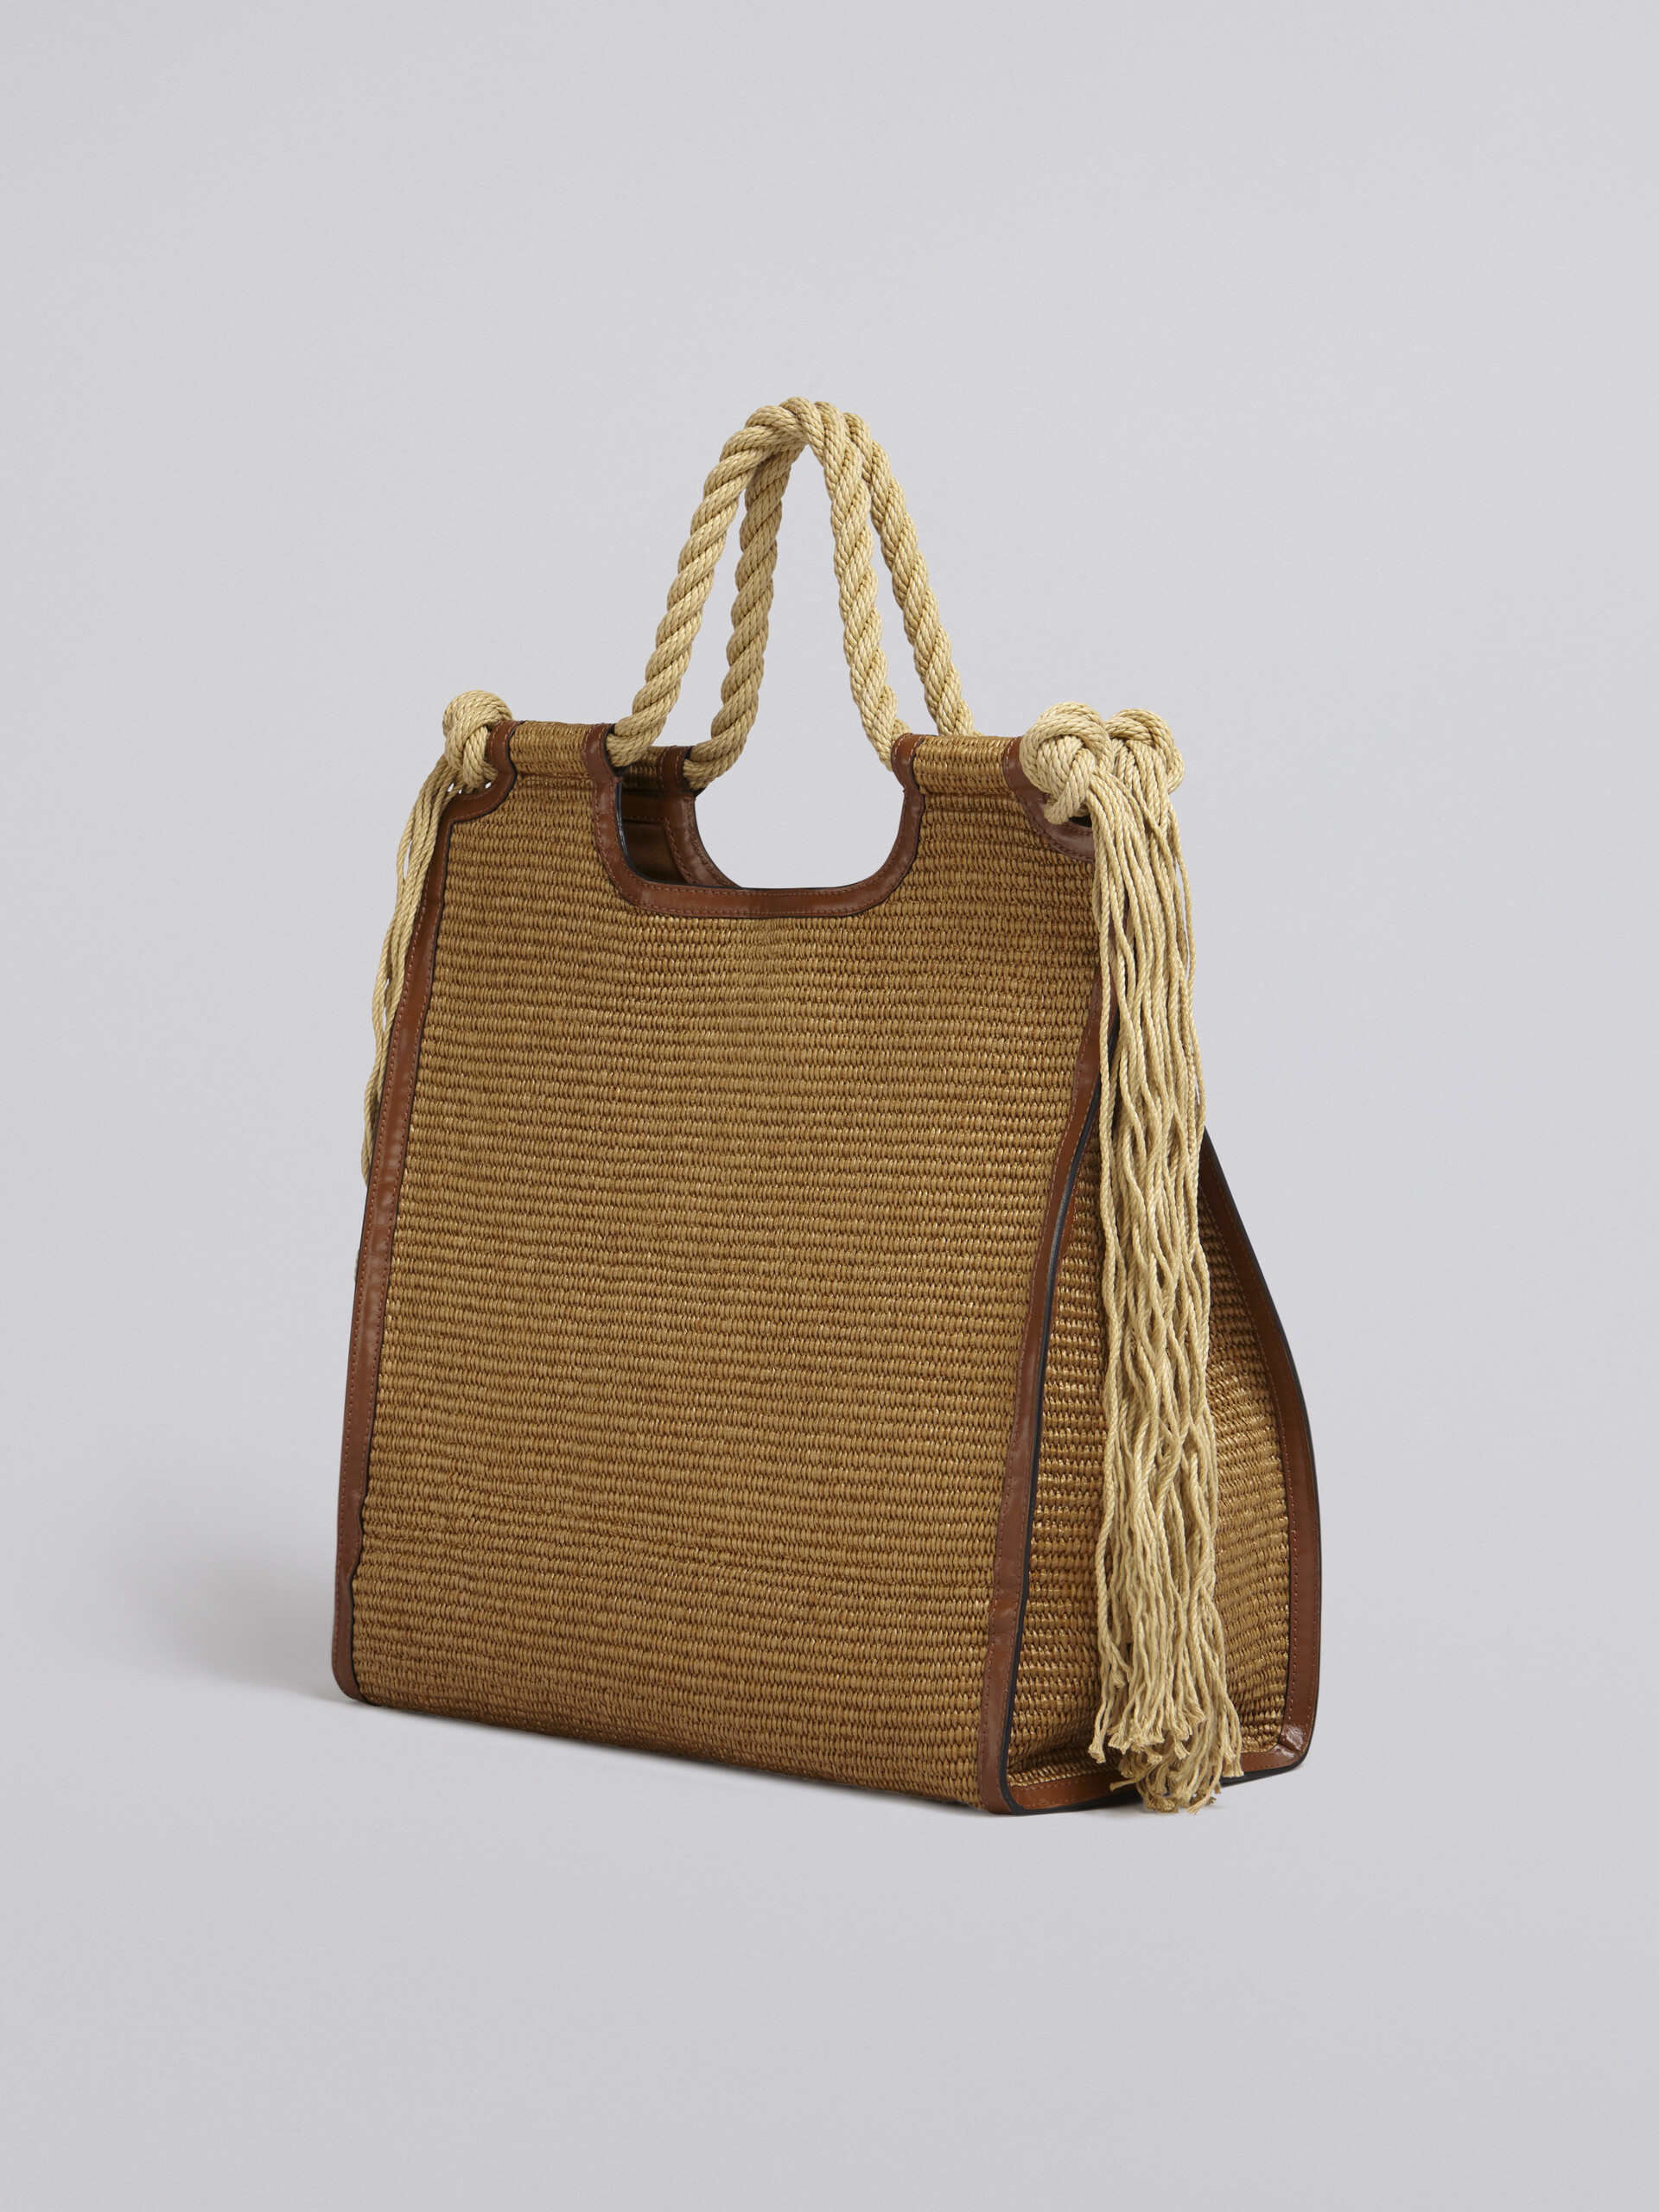 Sommertasche MARCEL aus einem Material in Bast-Optik, mit braunem Leder und Seilgriffen - Handtaschen - Image 3